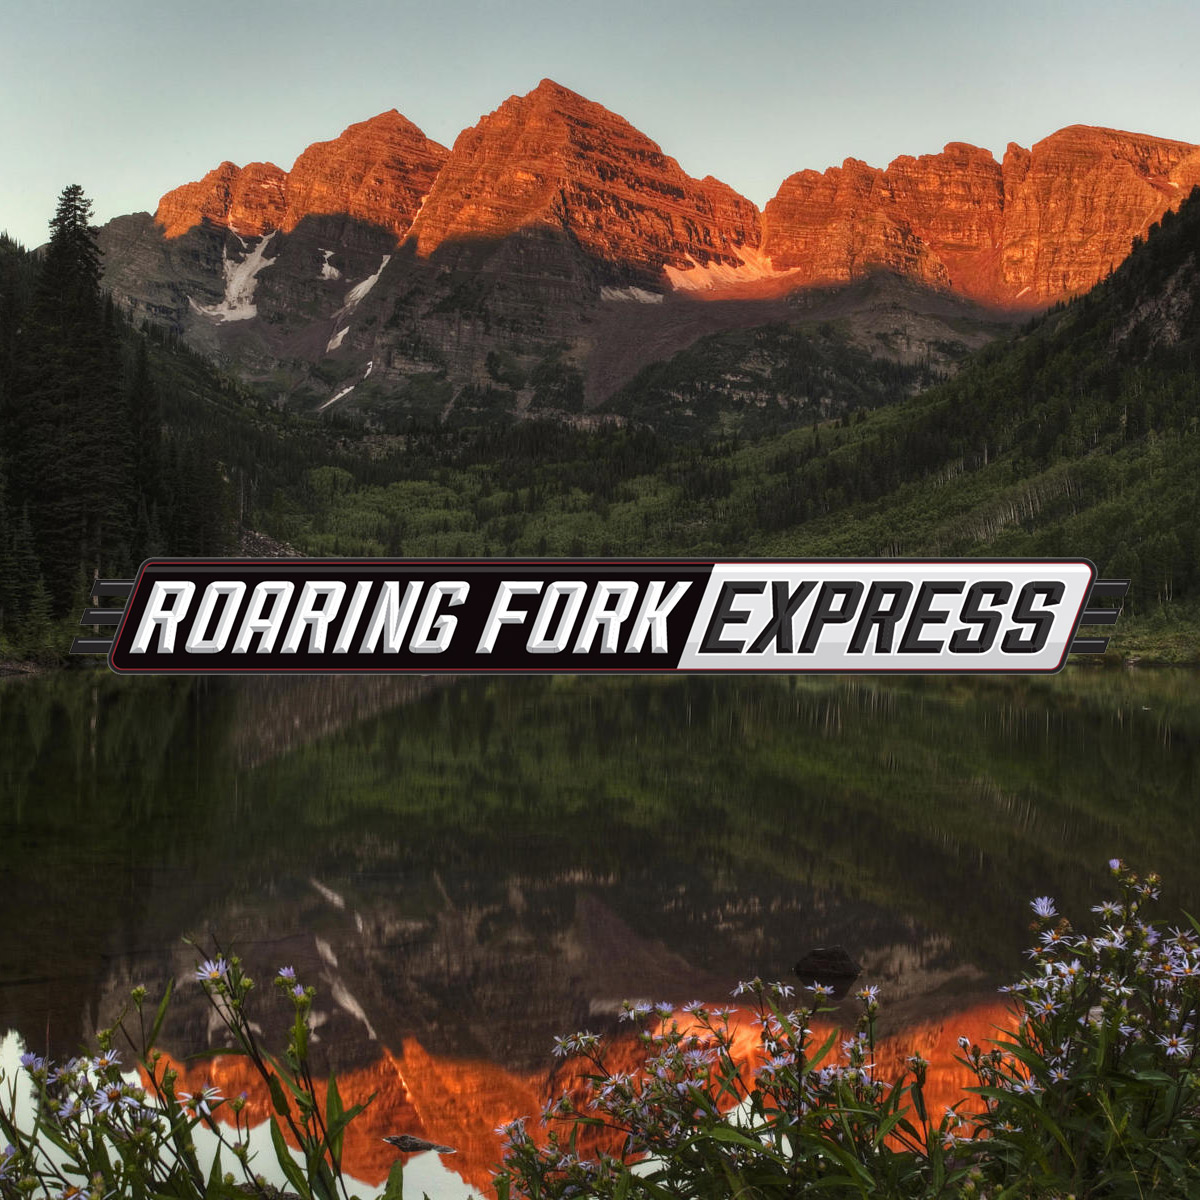 Roaring Fork Express - Aspen Snowmass Airport Transportation